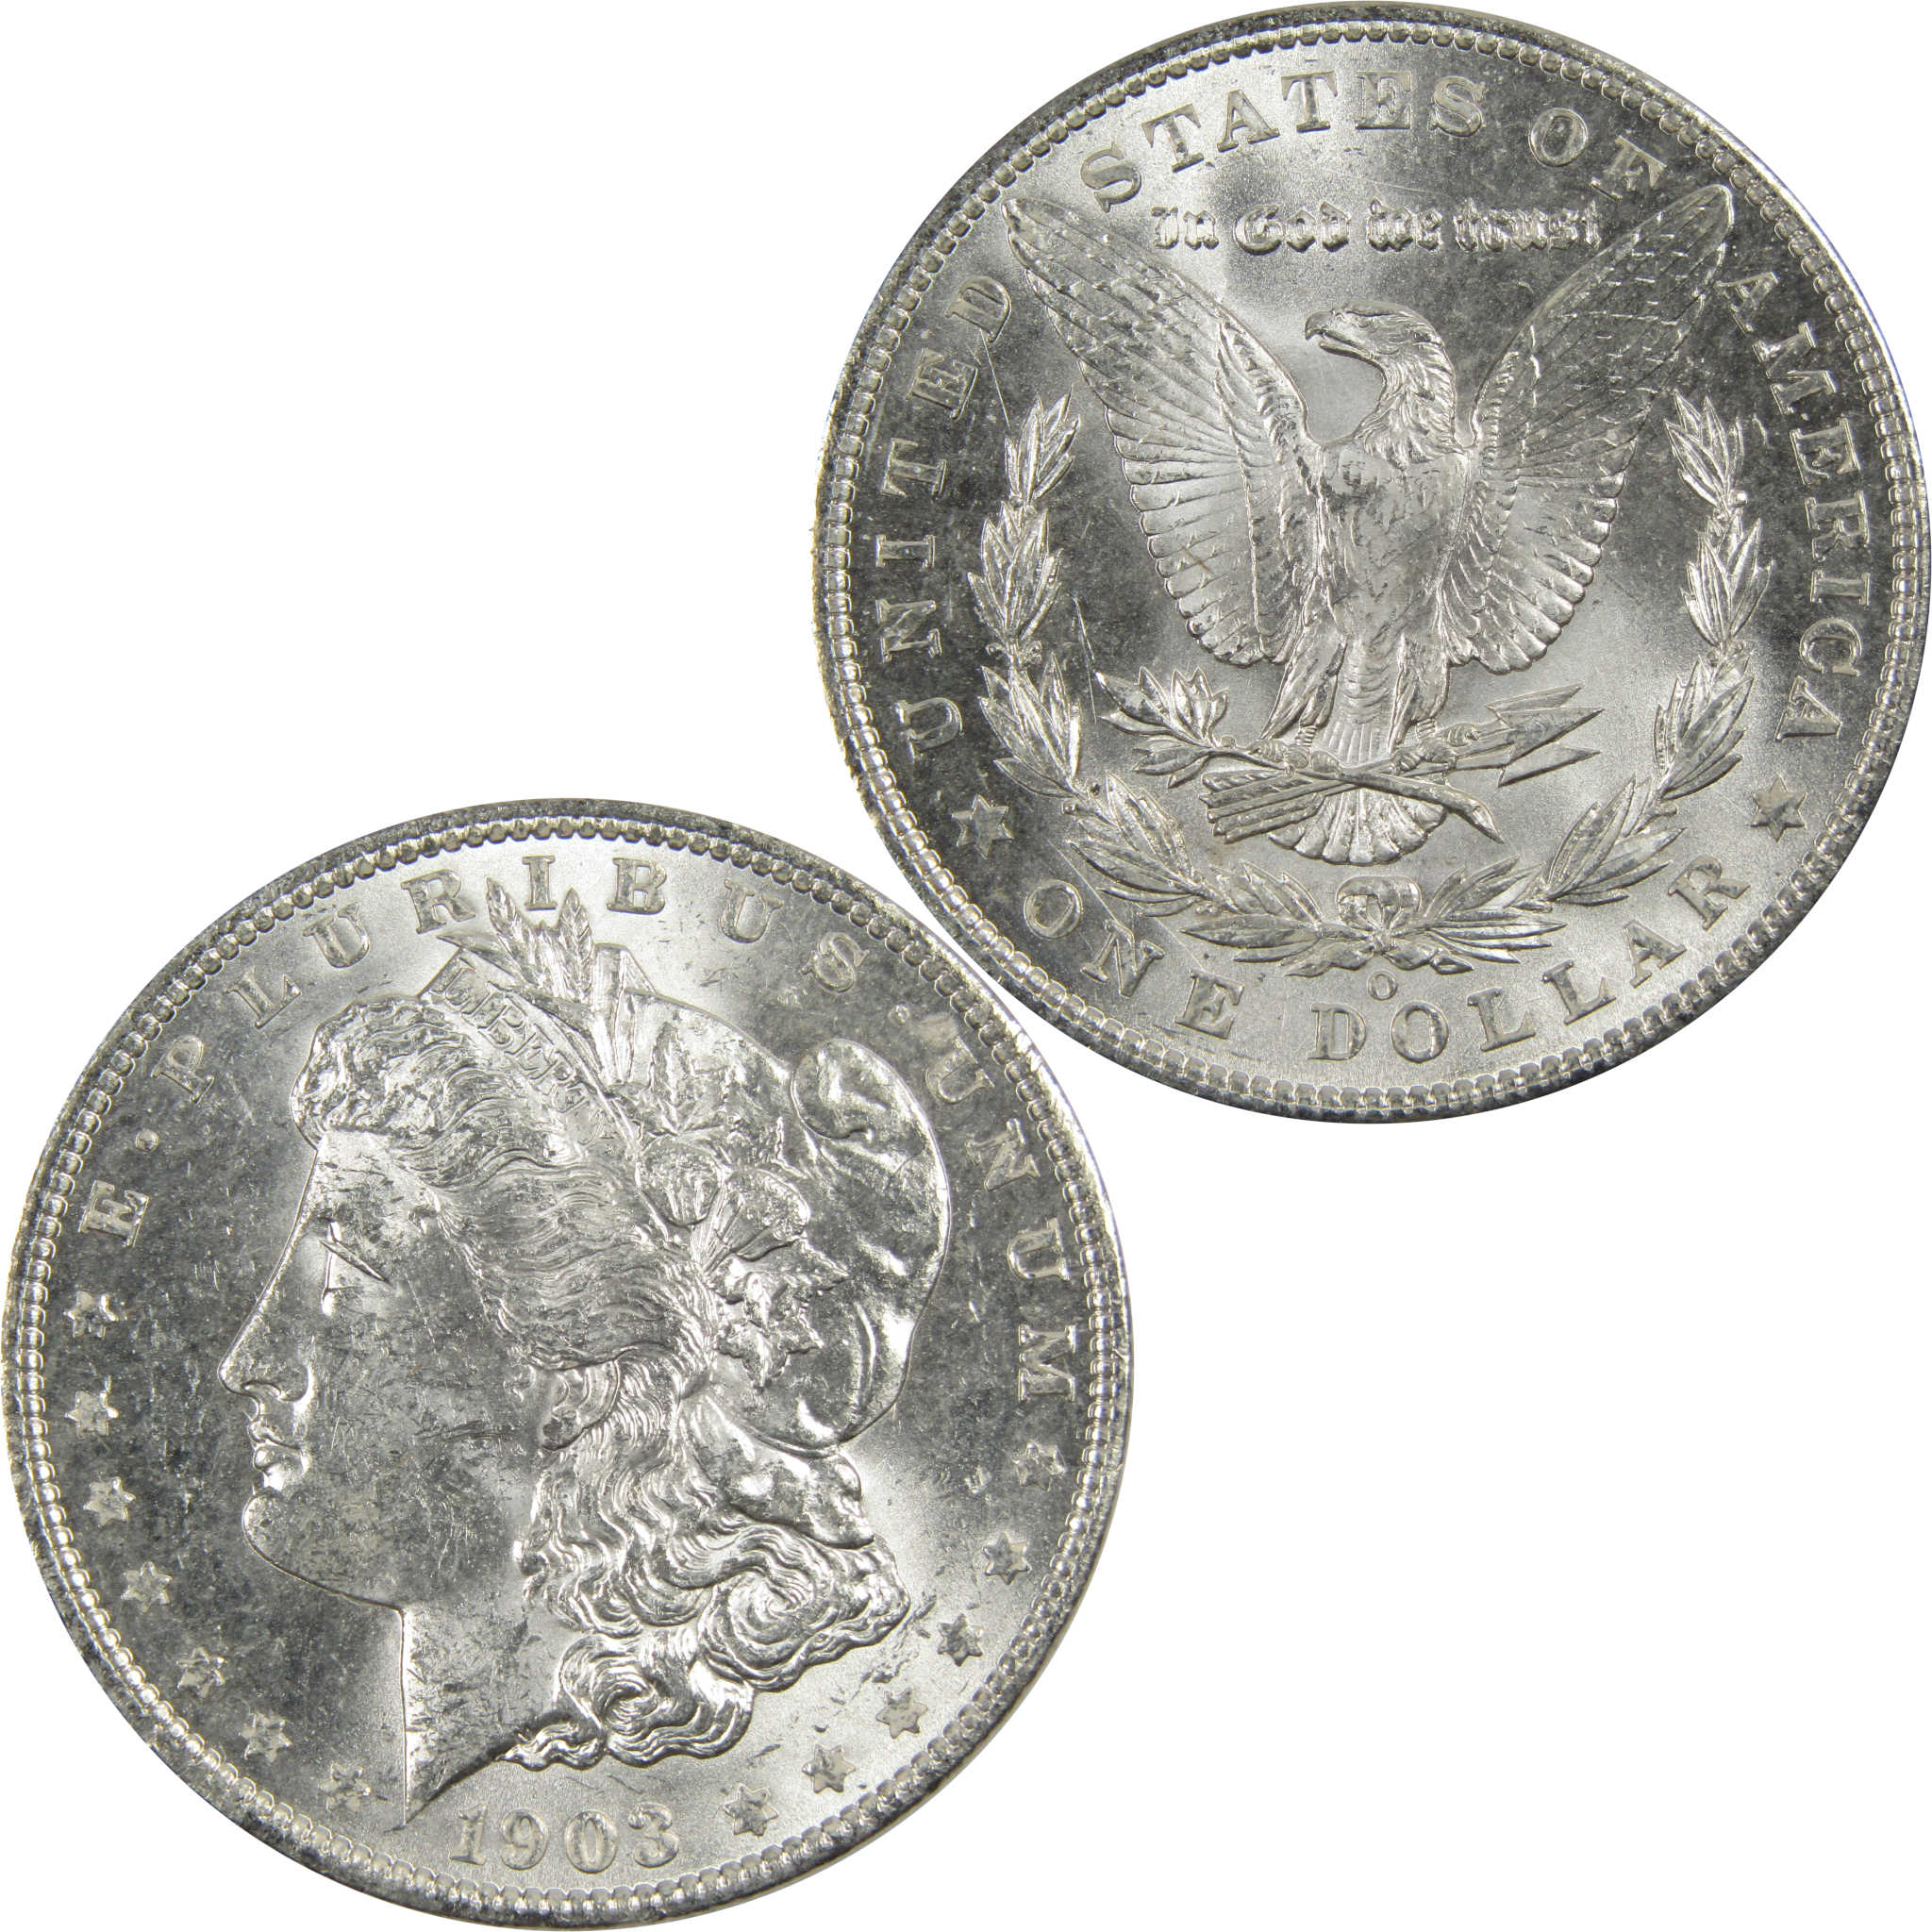 1903 O Morgan Dollar BU Choice Uncirculated 90% Silver $1 SKU:I7909 - Morgan coin - Morgan silver dollar - Morgan silver dollar for sale - Profile Coins &amp; Collectibles